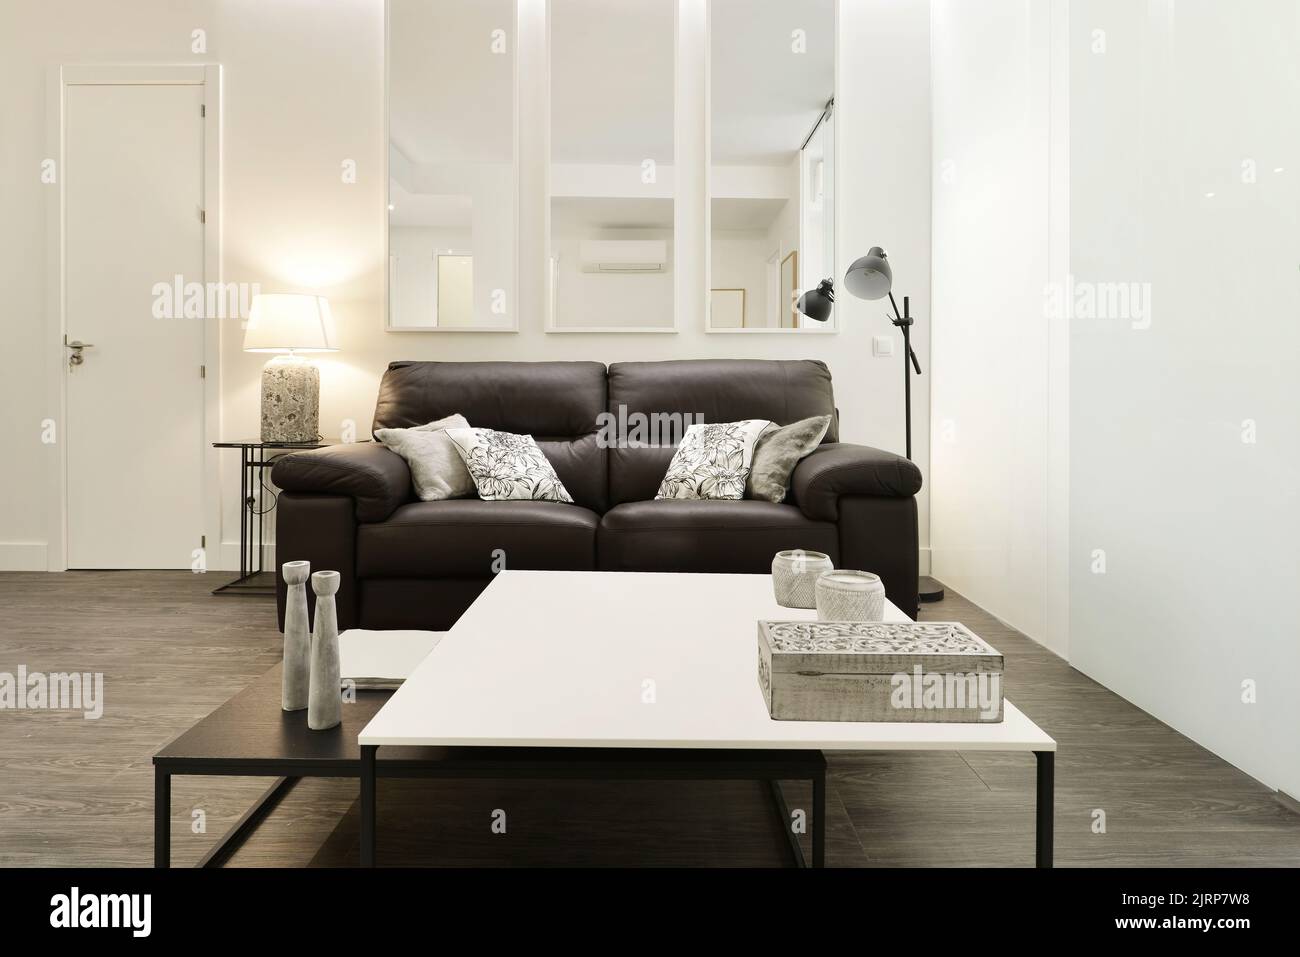 Salle de séjour avec canapé en cuir brun foncé dans une chambre légèrement décorée avec tables en bois carrées noires et blanches Banque D'Images